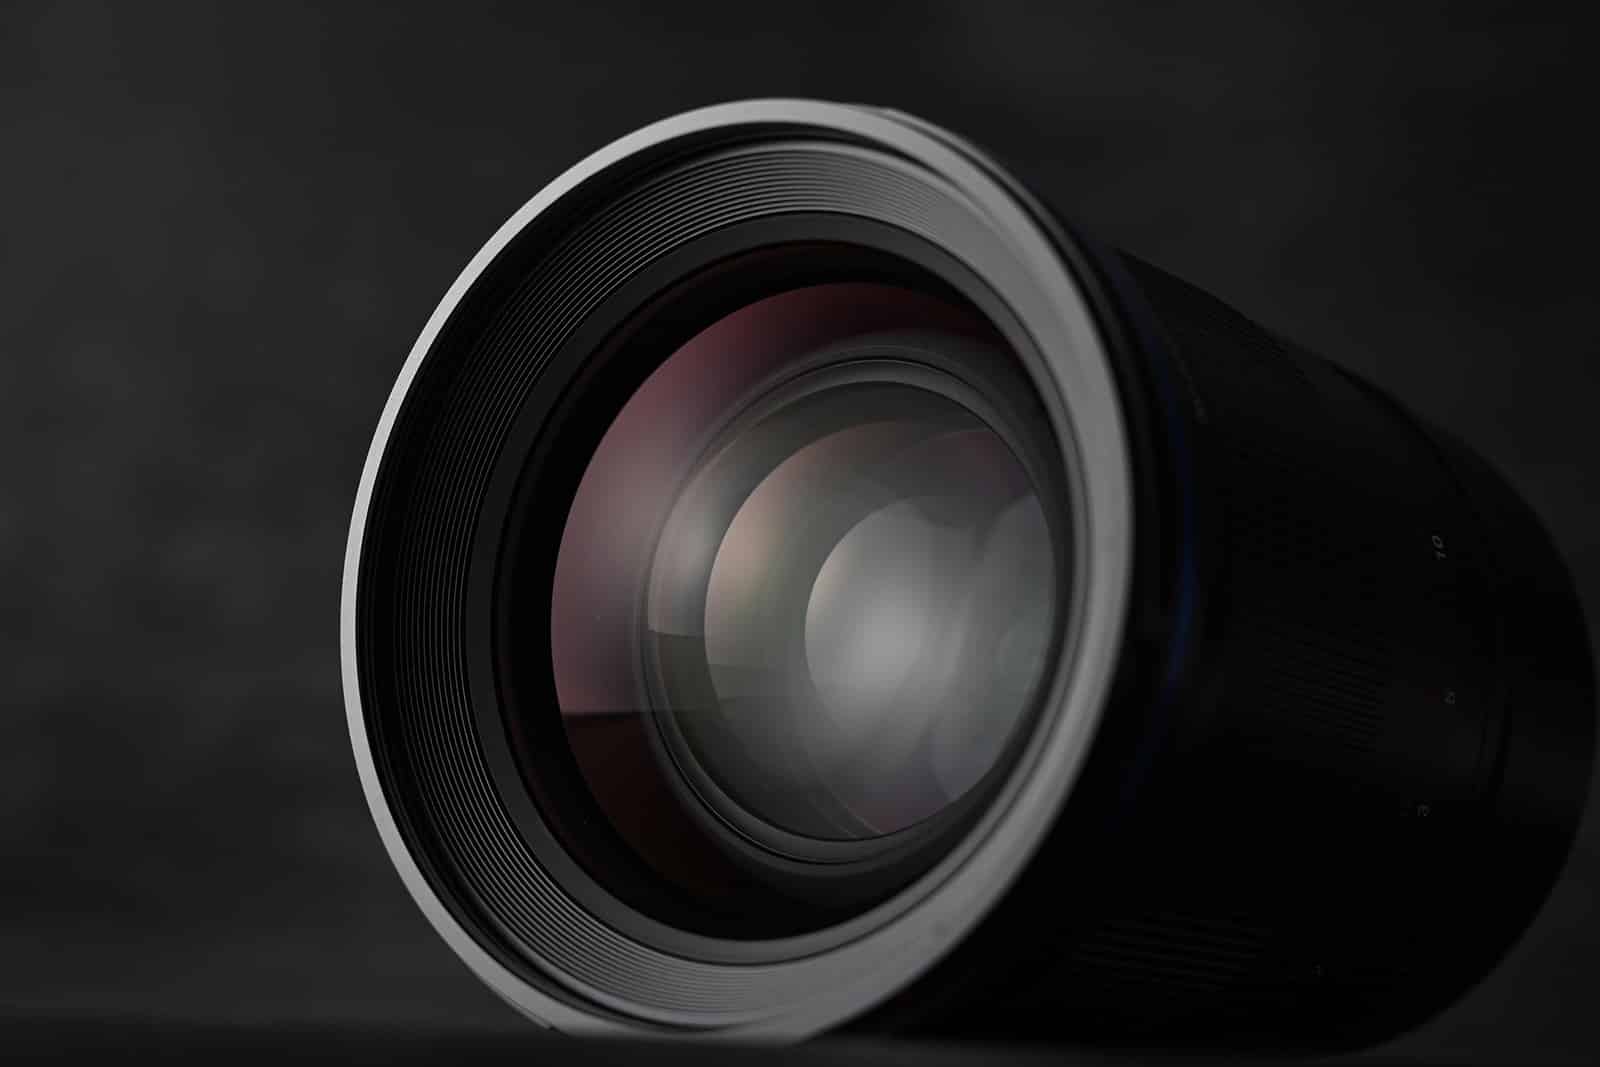 Laowa Argus 35mm F0.95 ra mắt, ống kính khẩu độ mở lớn nhất cho máy ảnh Full Frame